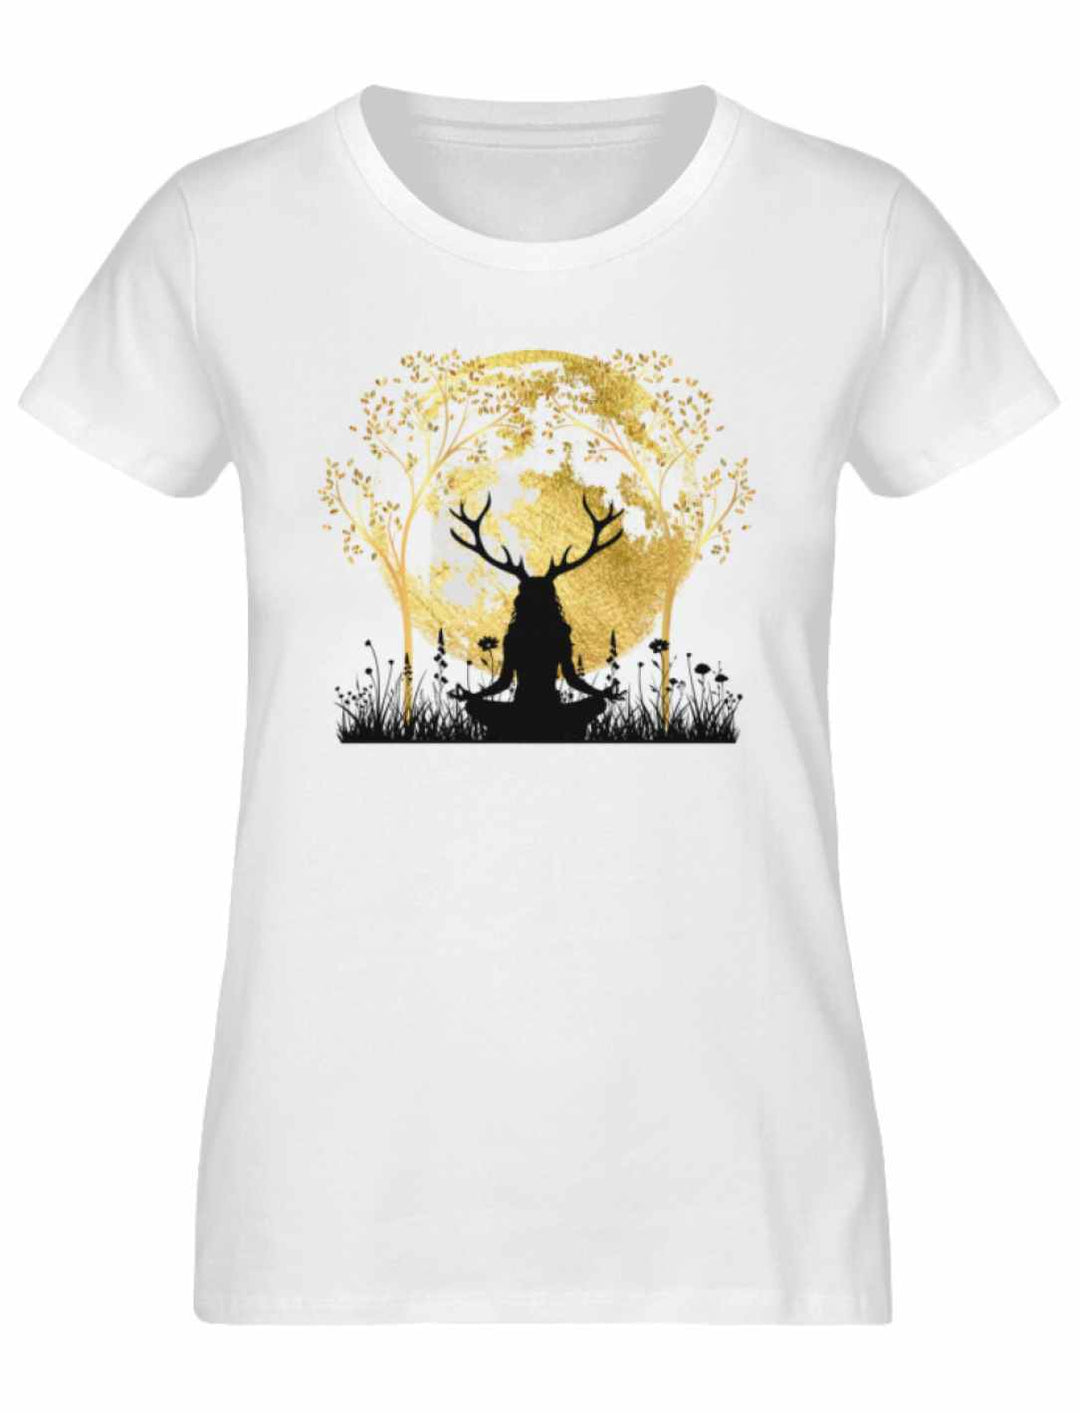 Weißes 'Druidin der alten Wälder' Damen T-Shirt, hervorgehoben durch die mystische Darstellung einer Druidin im Einklang mit Mond und Lebensbaum.